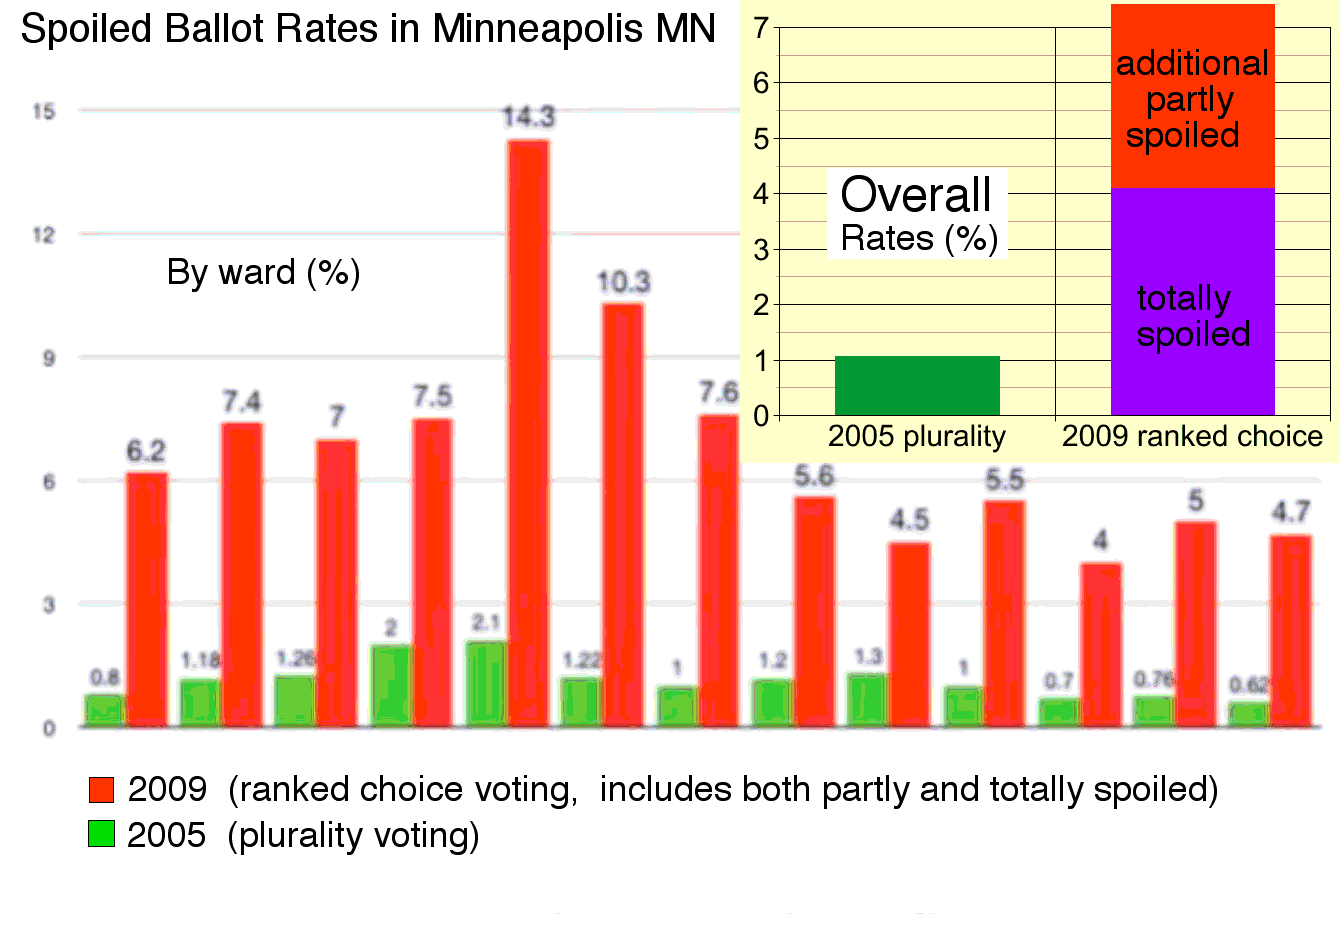 Minneapolis spoilage rate data